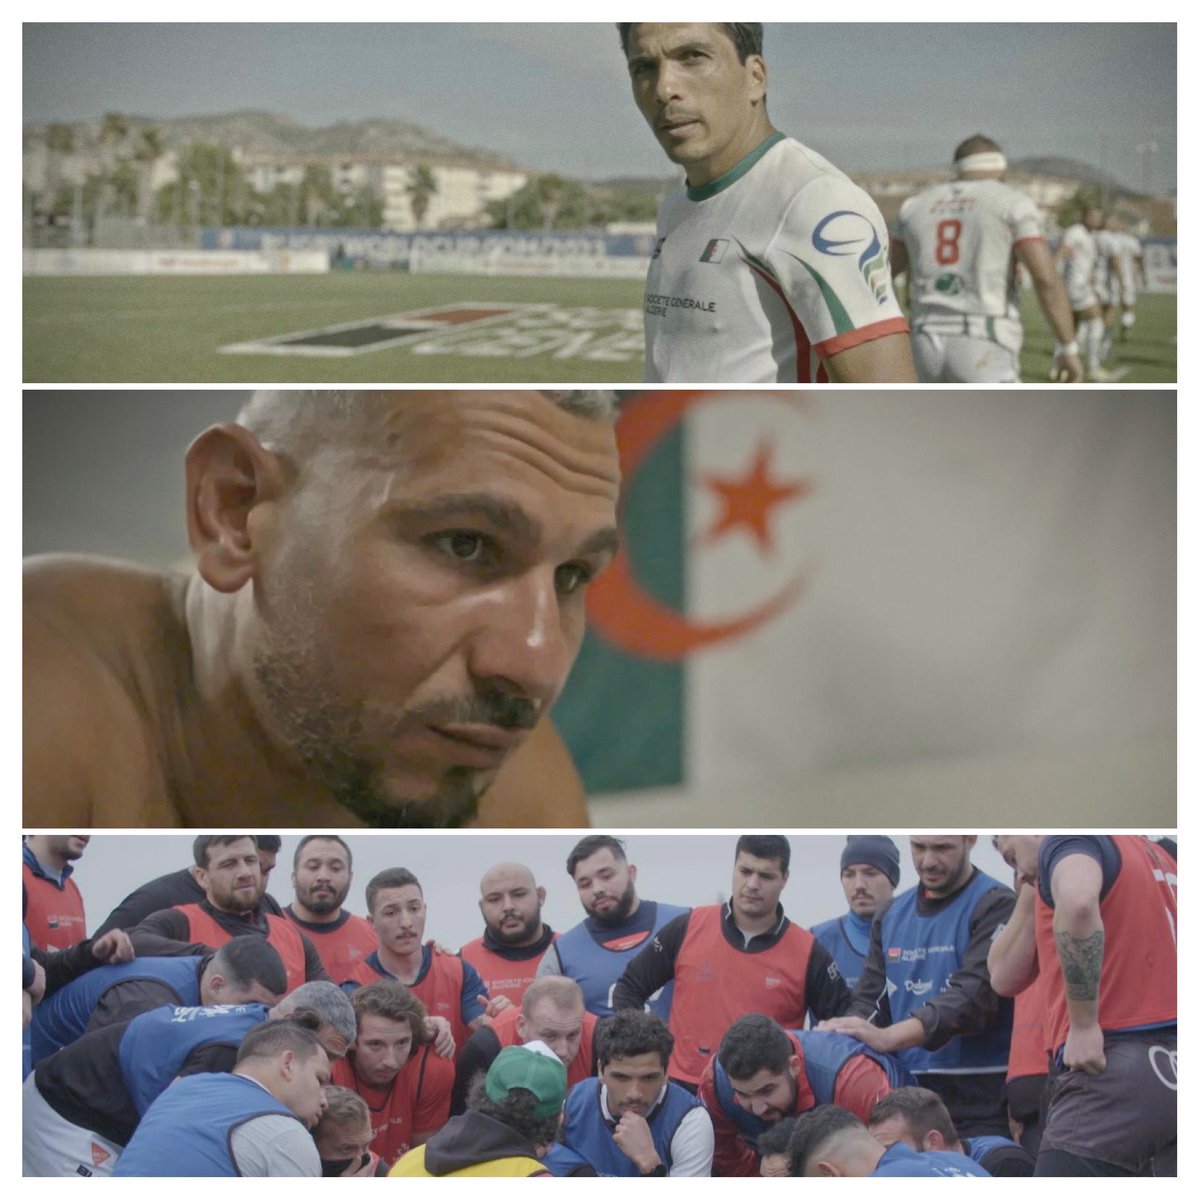 Suite du périple du XV d’Algérie dans sa qualif pour la coupe du monde de rugby, c’est dans @InterieurSport ce soir à 23h15 après le CRC @CanalplusRugby sur @canalplus « Le coeur D’Z hommes » par @GaspardAugendre #rugby #Algerie #DZ